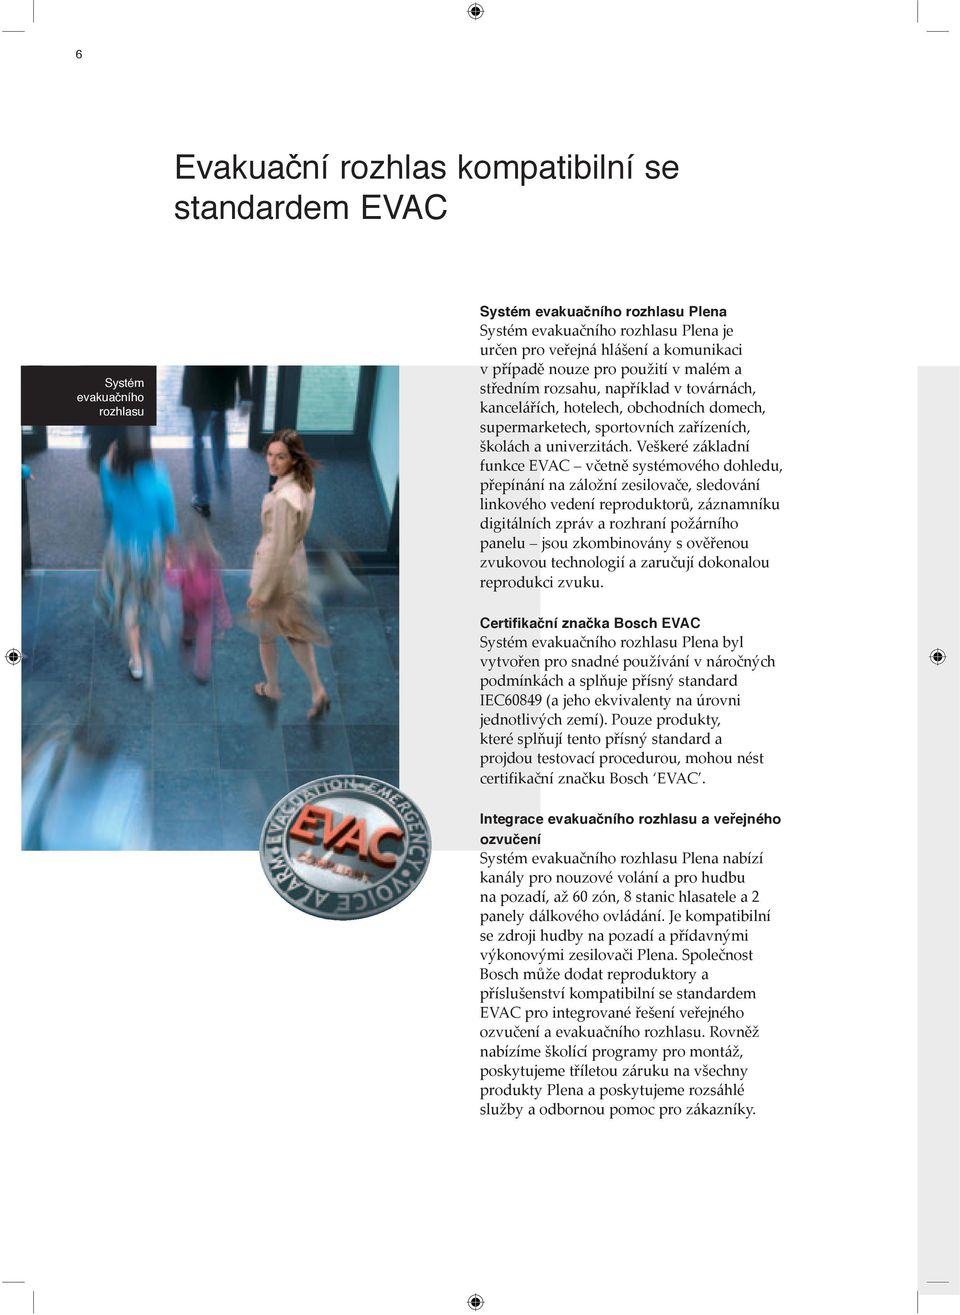 Veškeré základní funkce EVAC včetně systémového dohledu, přepínání na záložní zesilovače, sledování linkového vedení reproduktorů, záznamníku digitálních zpráv a rozhraní požárního panelu jsou